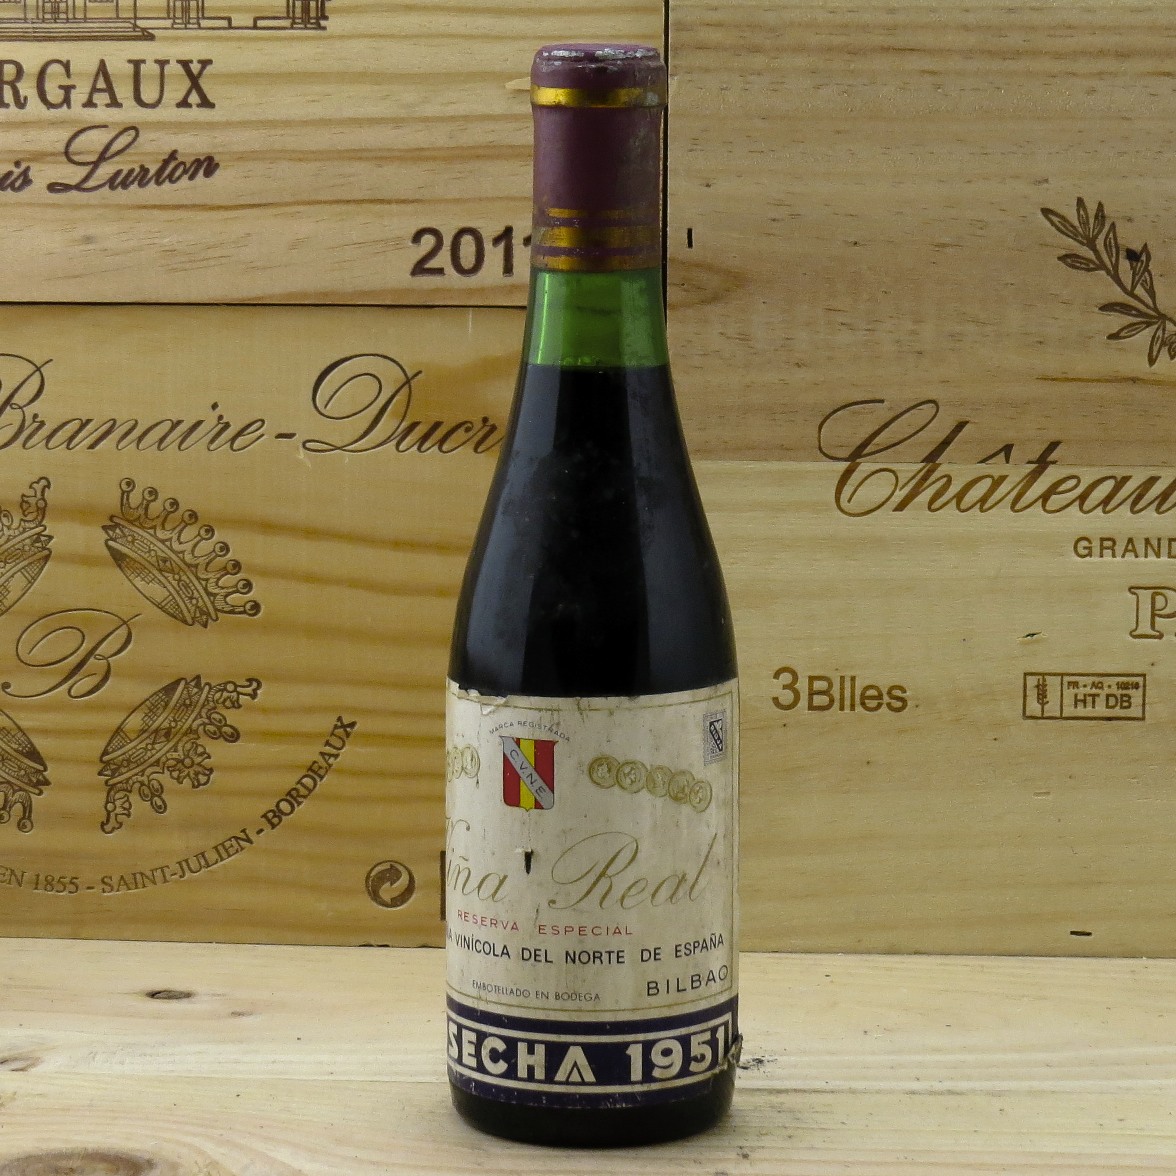 1951 Rioja Vina Real Reserva Especial Compania Vinicola del norte de Espana Half bottle